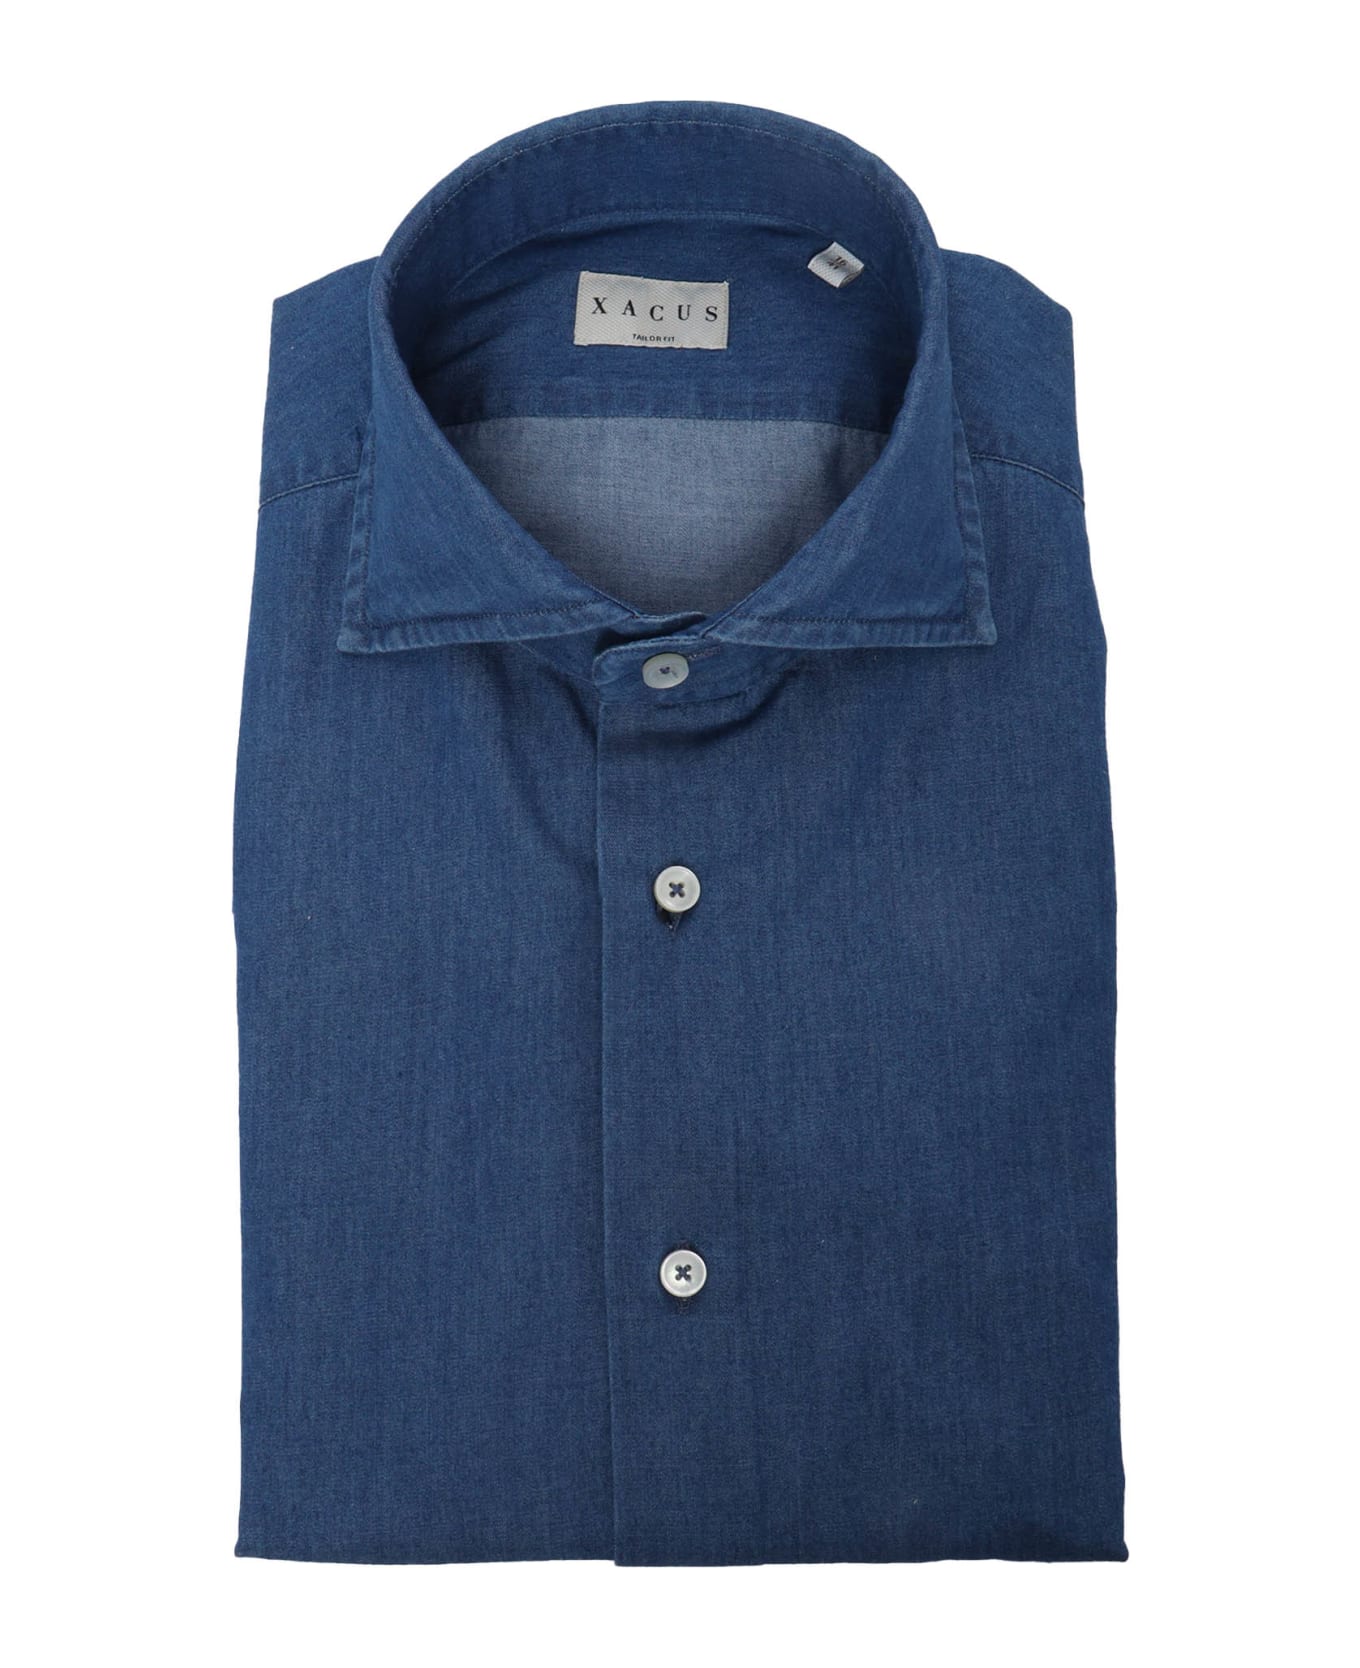 Xacus Blue Cotton Shirt - MULTICOLOR